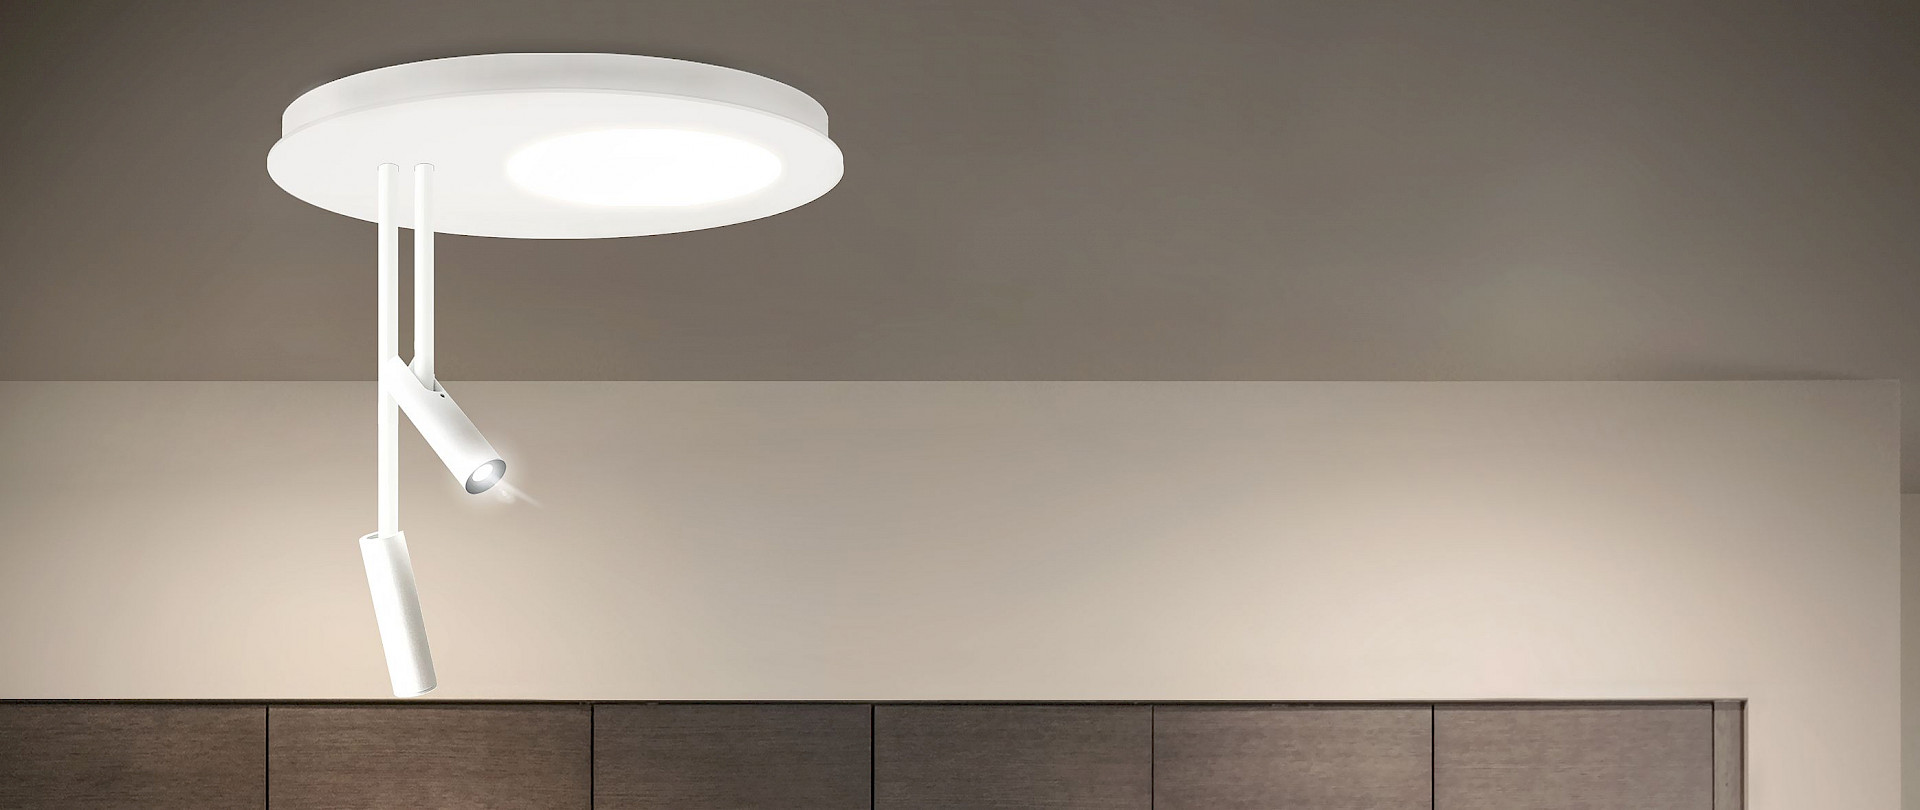 TeamItalia - Micro hybrid ceiling light